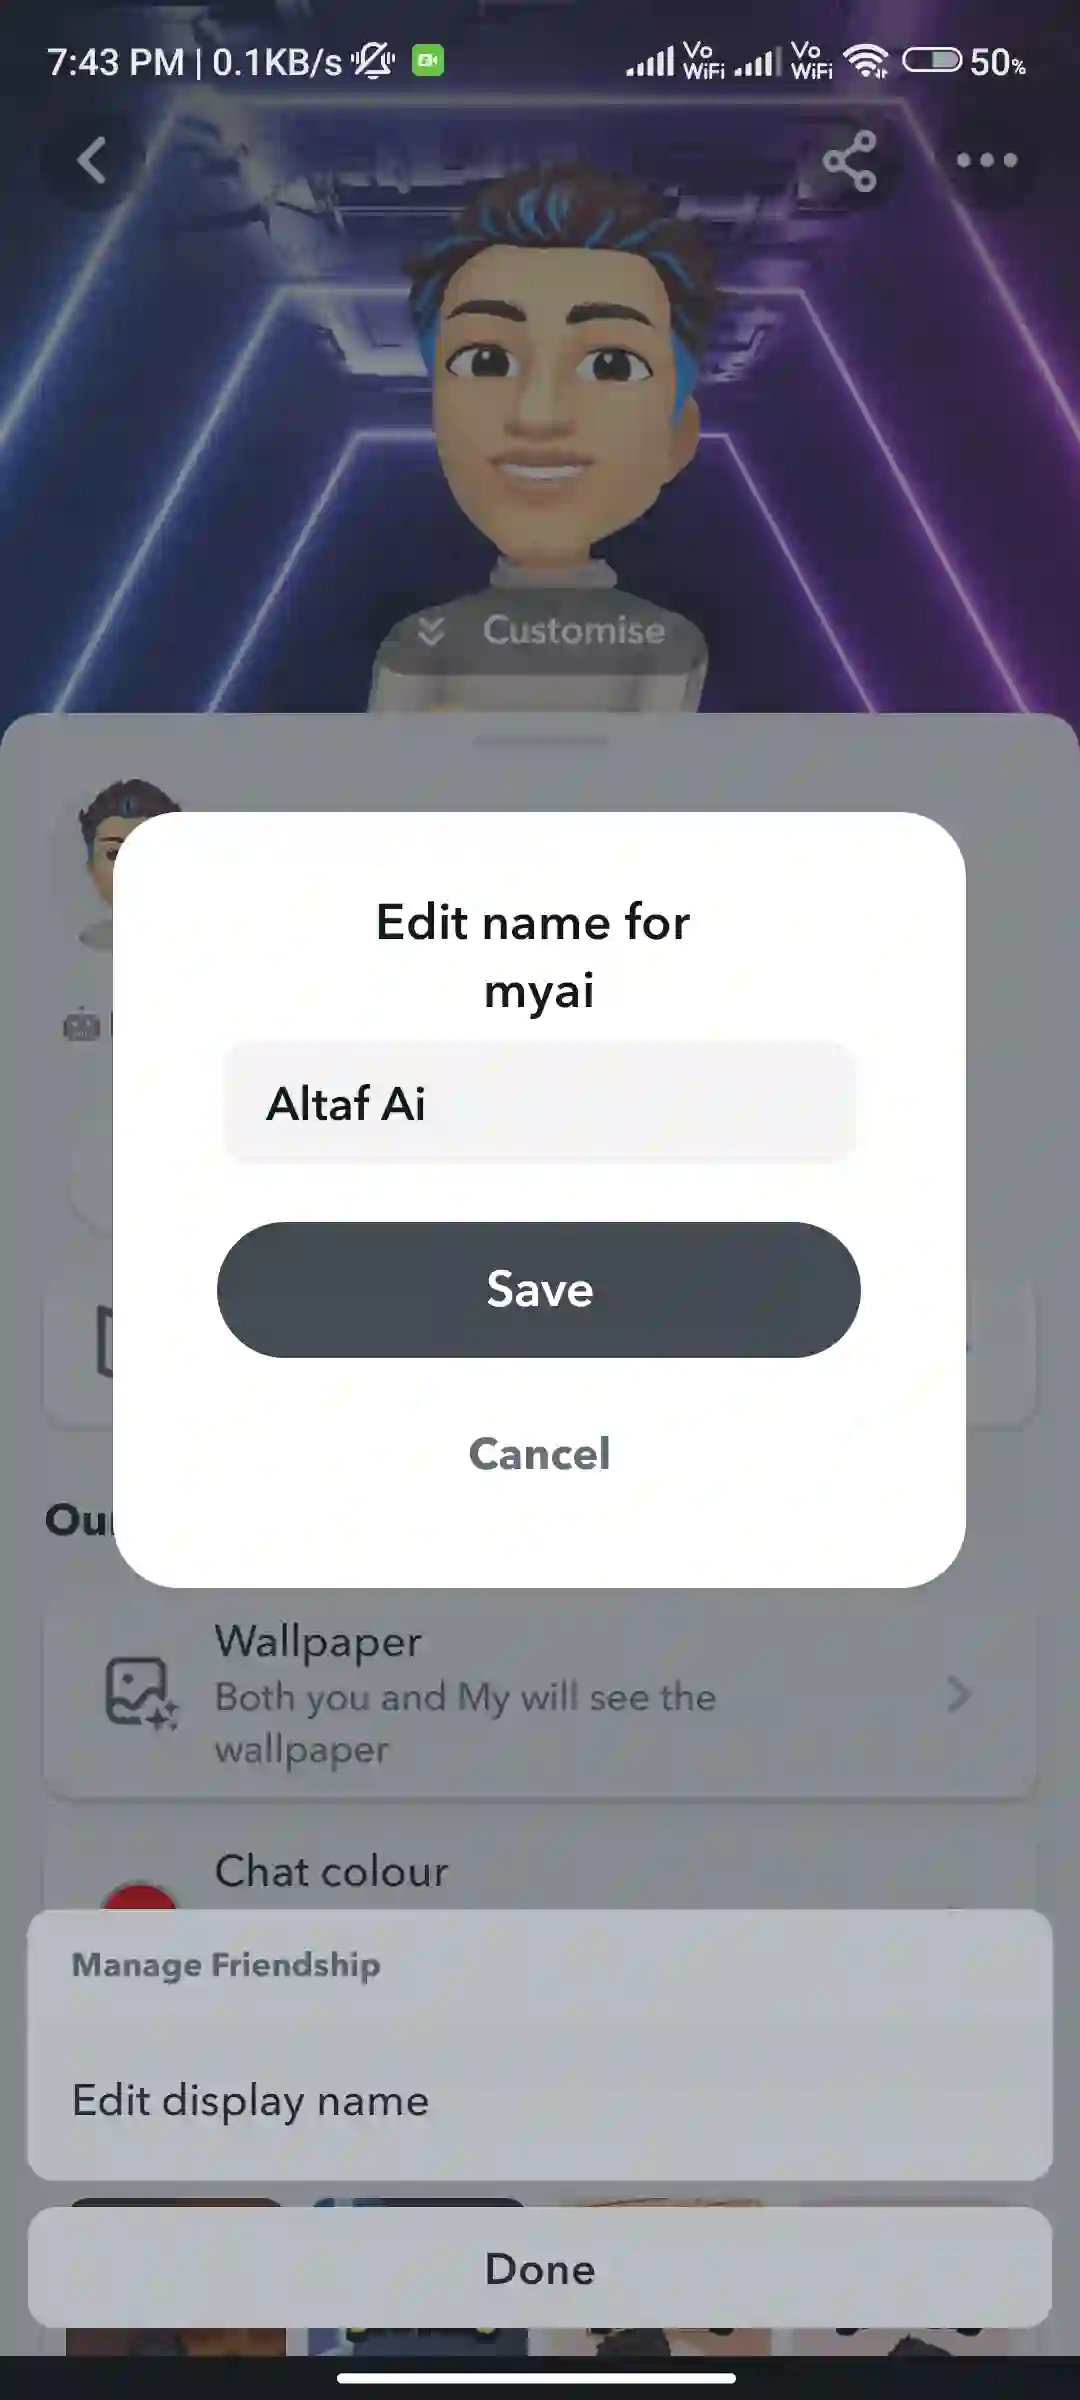 Enter your desired AI name